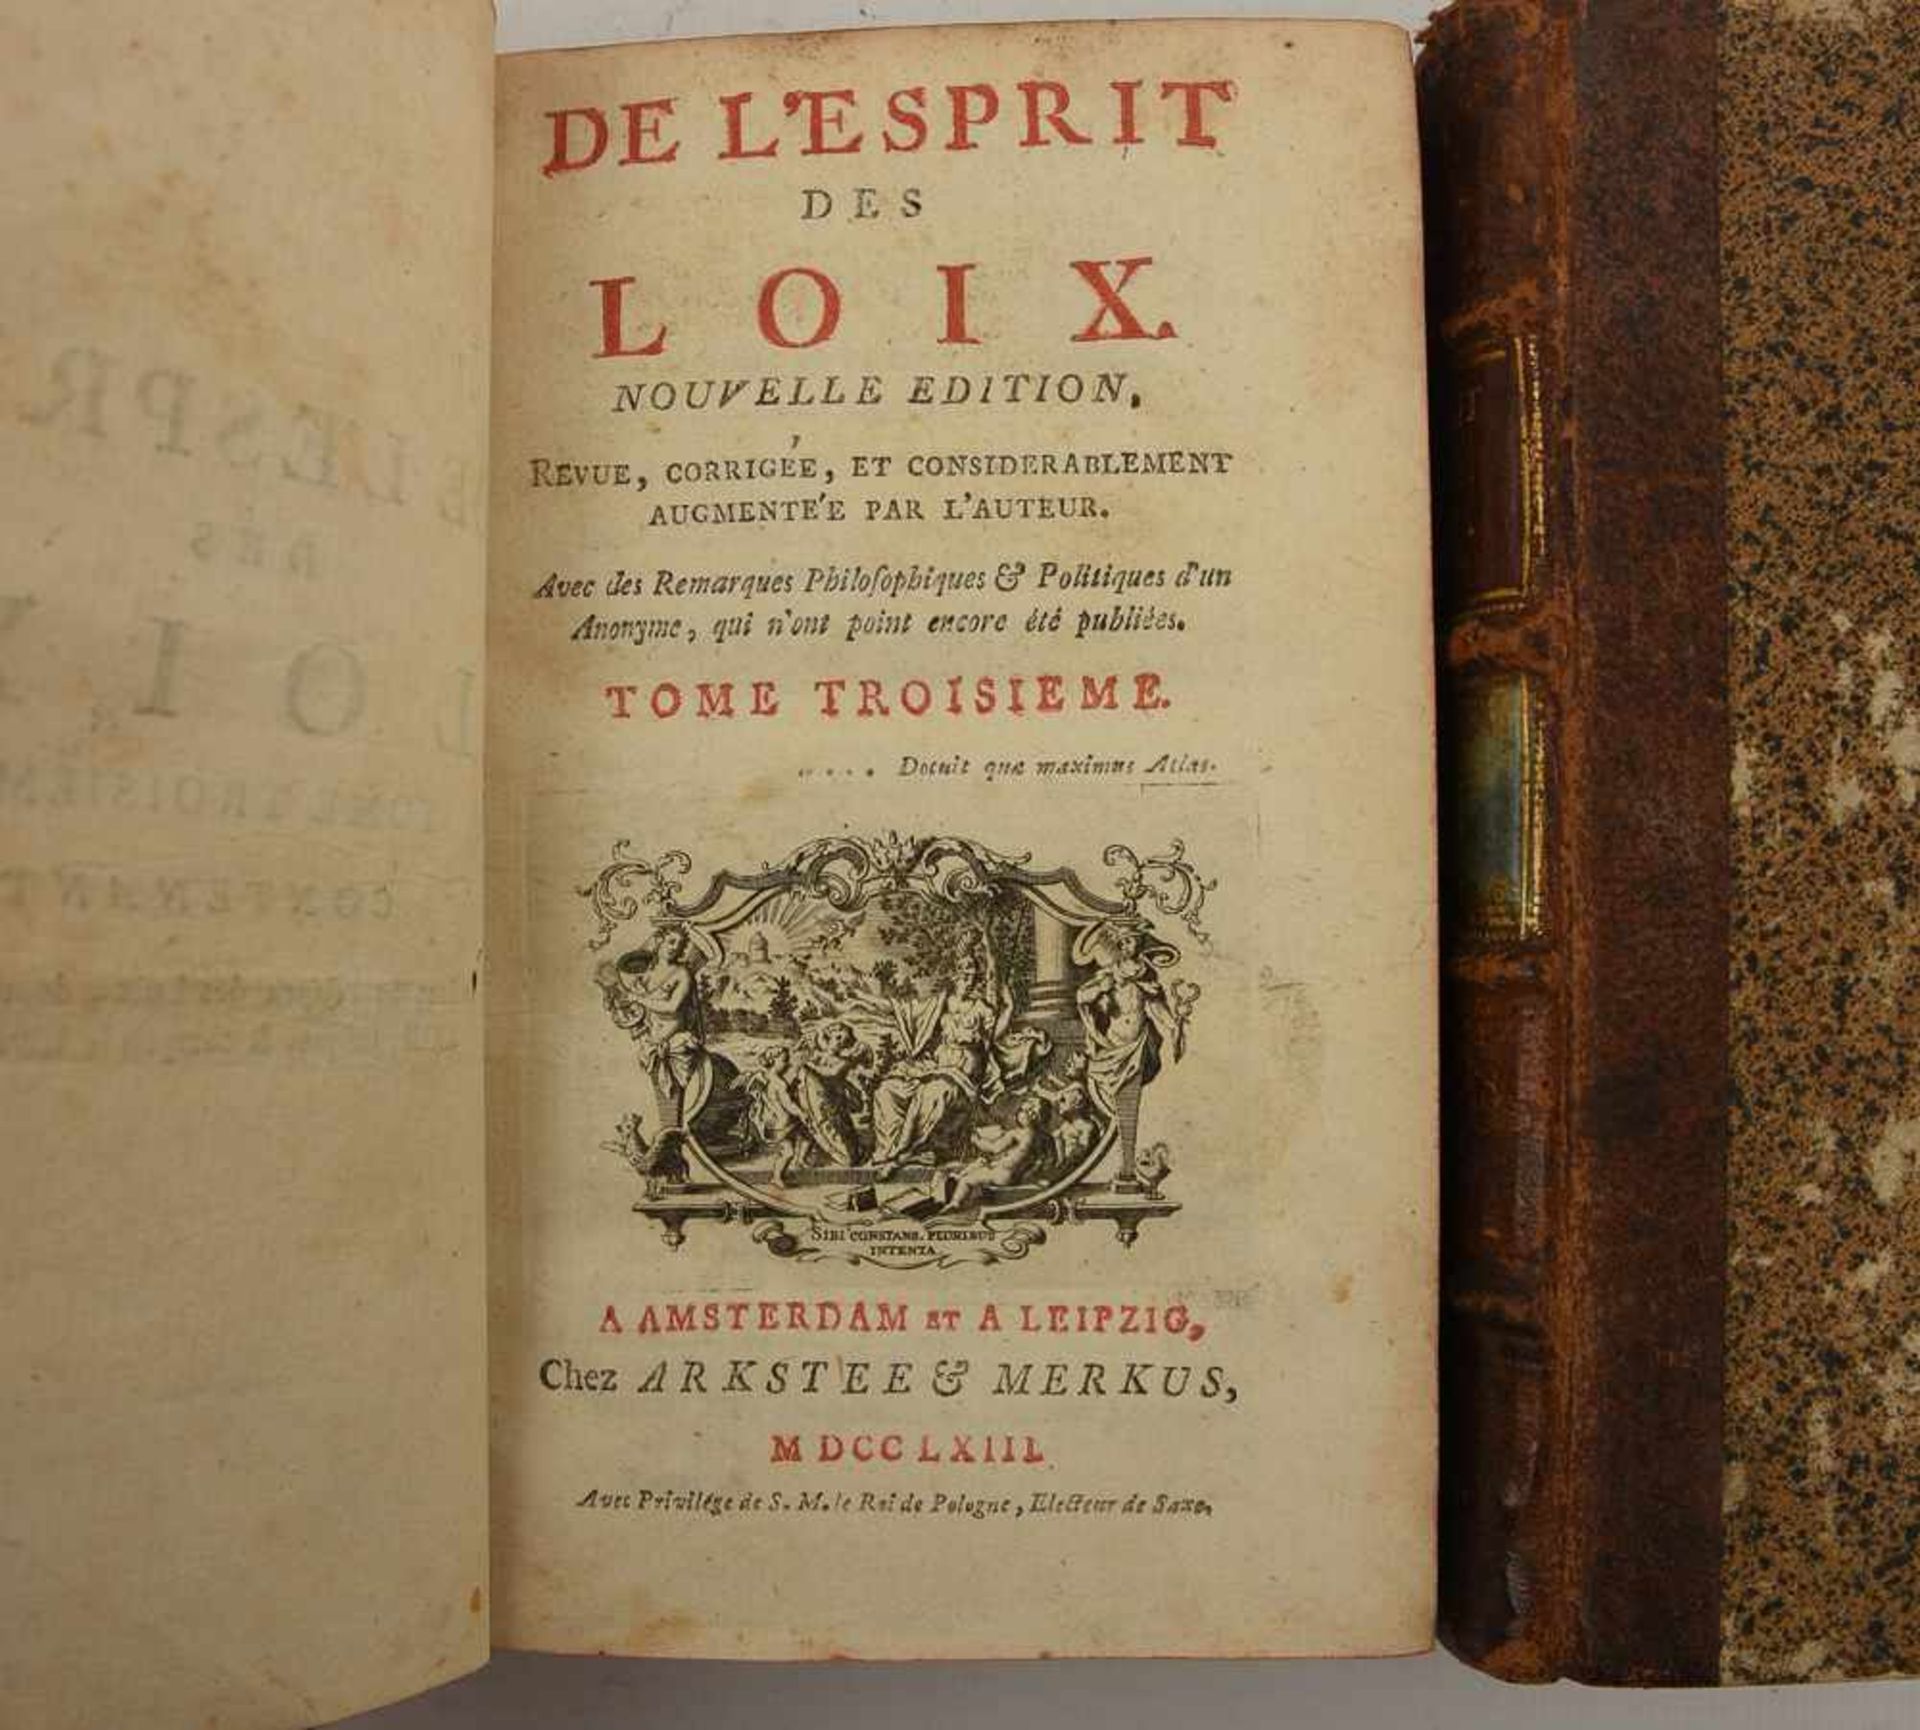 4 BÄNDE "DE LÉSPRIT DES LOIX", in Leder gebundene Ausgaben, Amsterdam/Leipzig 1763 - Bild 3 aus 3